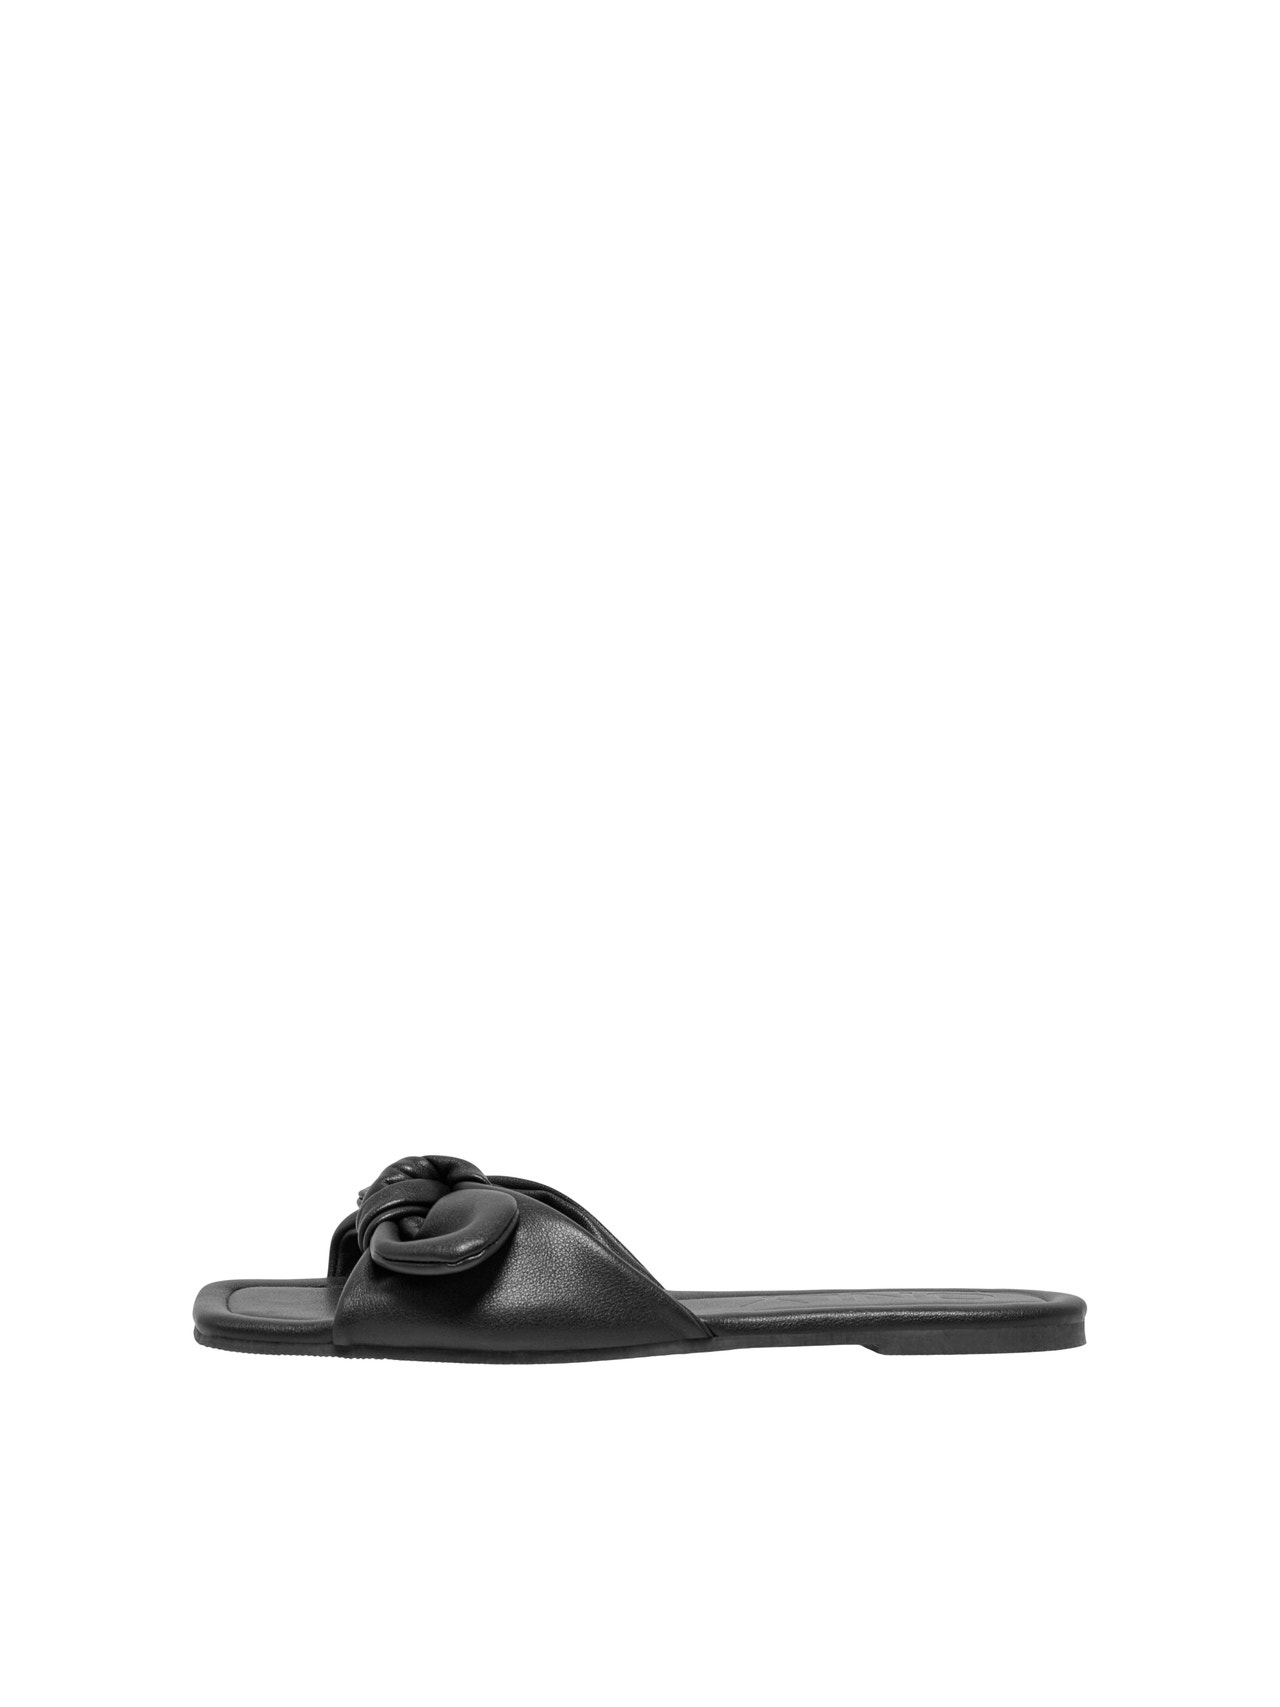 ONLY Open toe Sandal -Black - 15288110